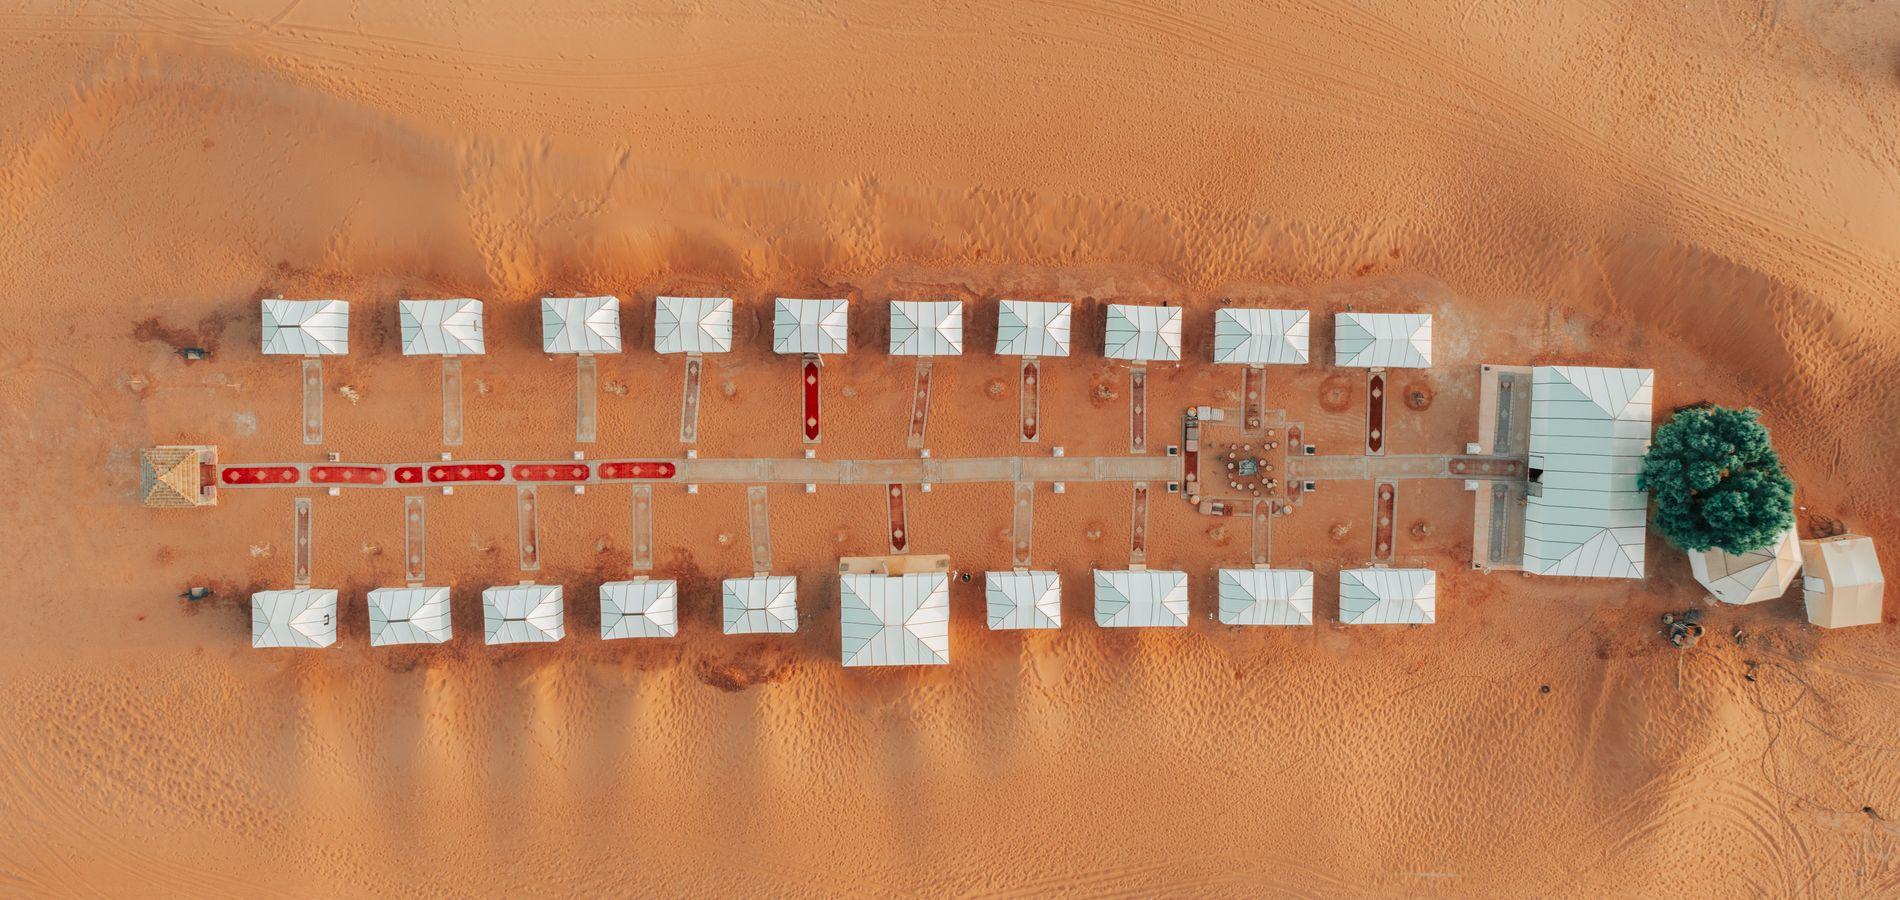 Azawad Desert Camp Merzouga!